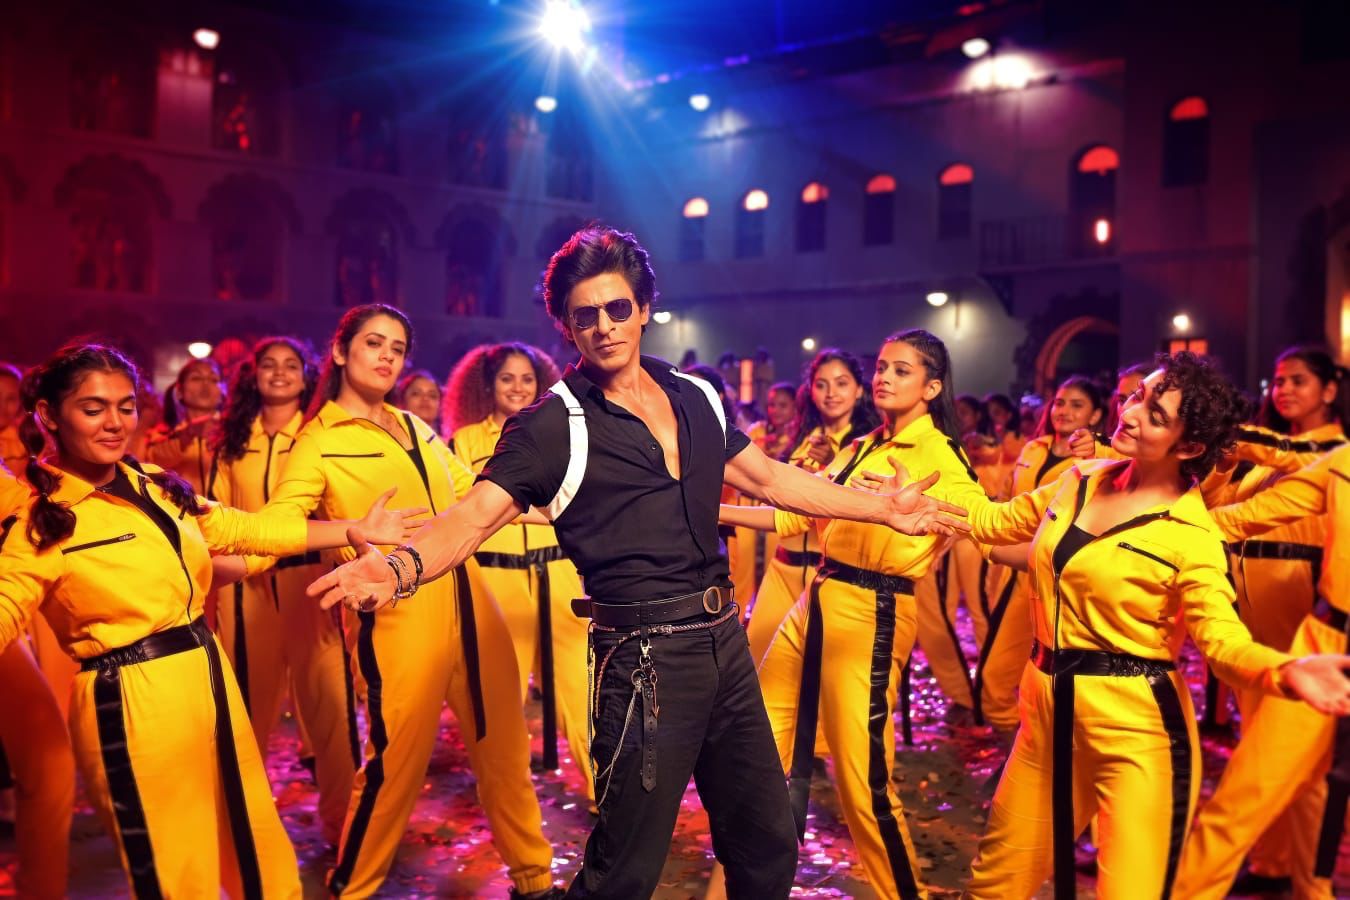 شاہ رخ خان کی فلم ’جوان‘کا پہلا گانا’زندہ بندہ‘ریلیز، شائقین  نے کیا استقبال